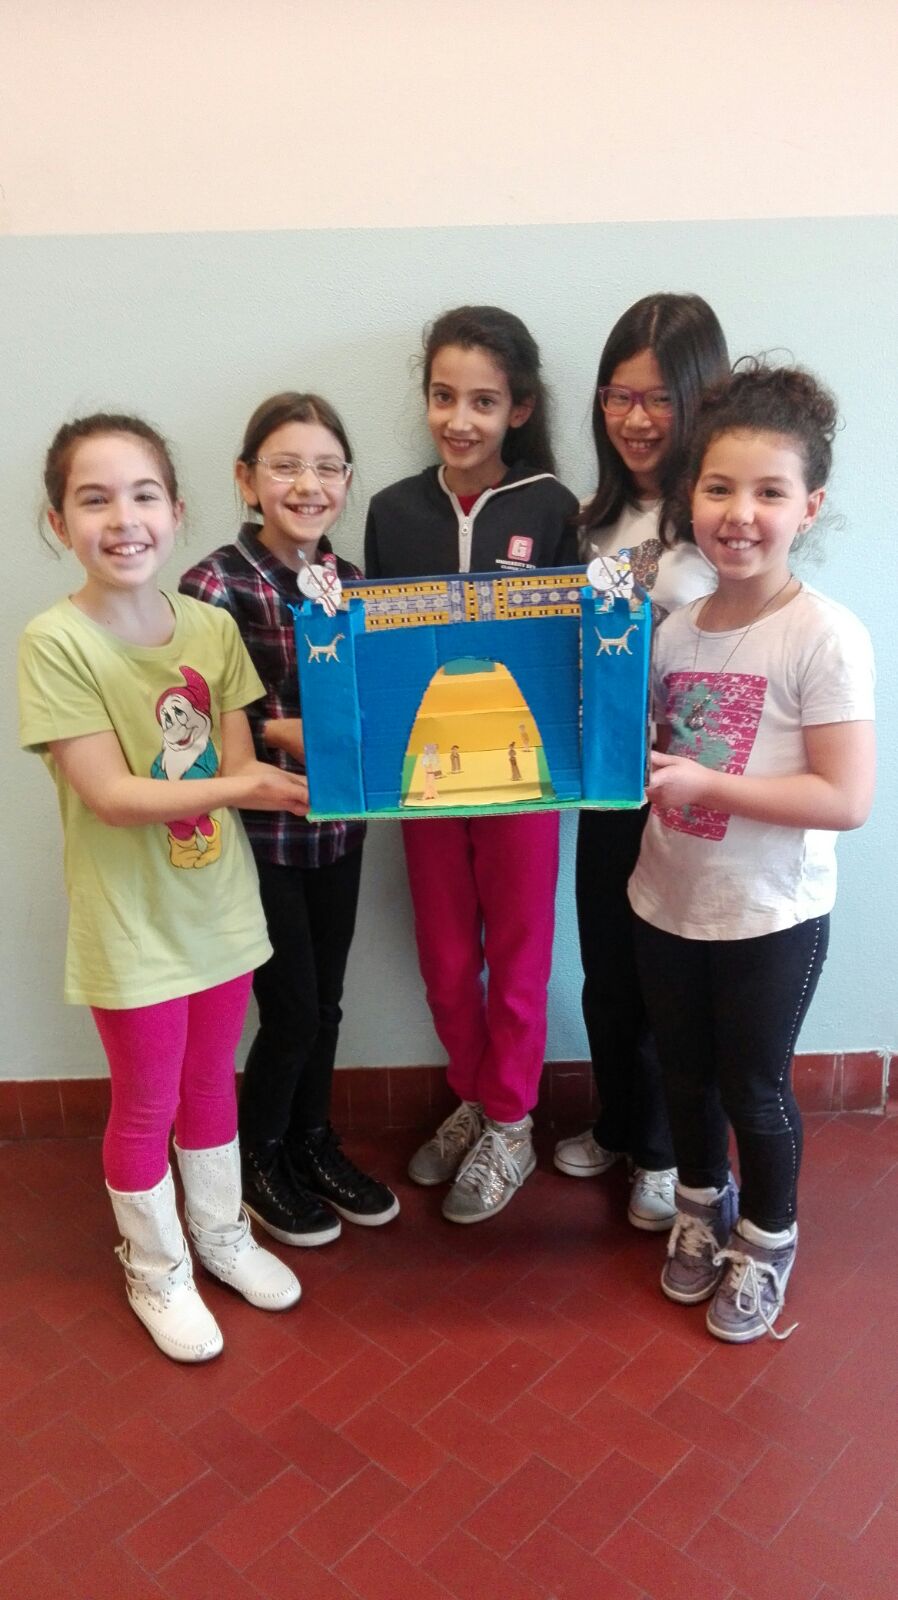 La miniatura della porta di Ishtar sorretta da quattro bambine della classe.